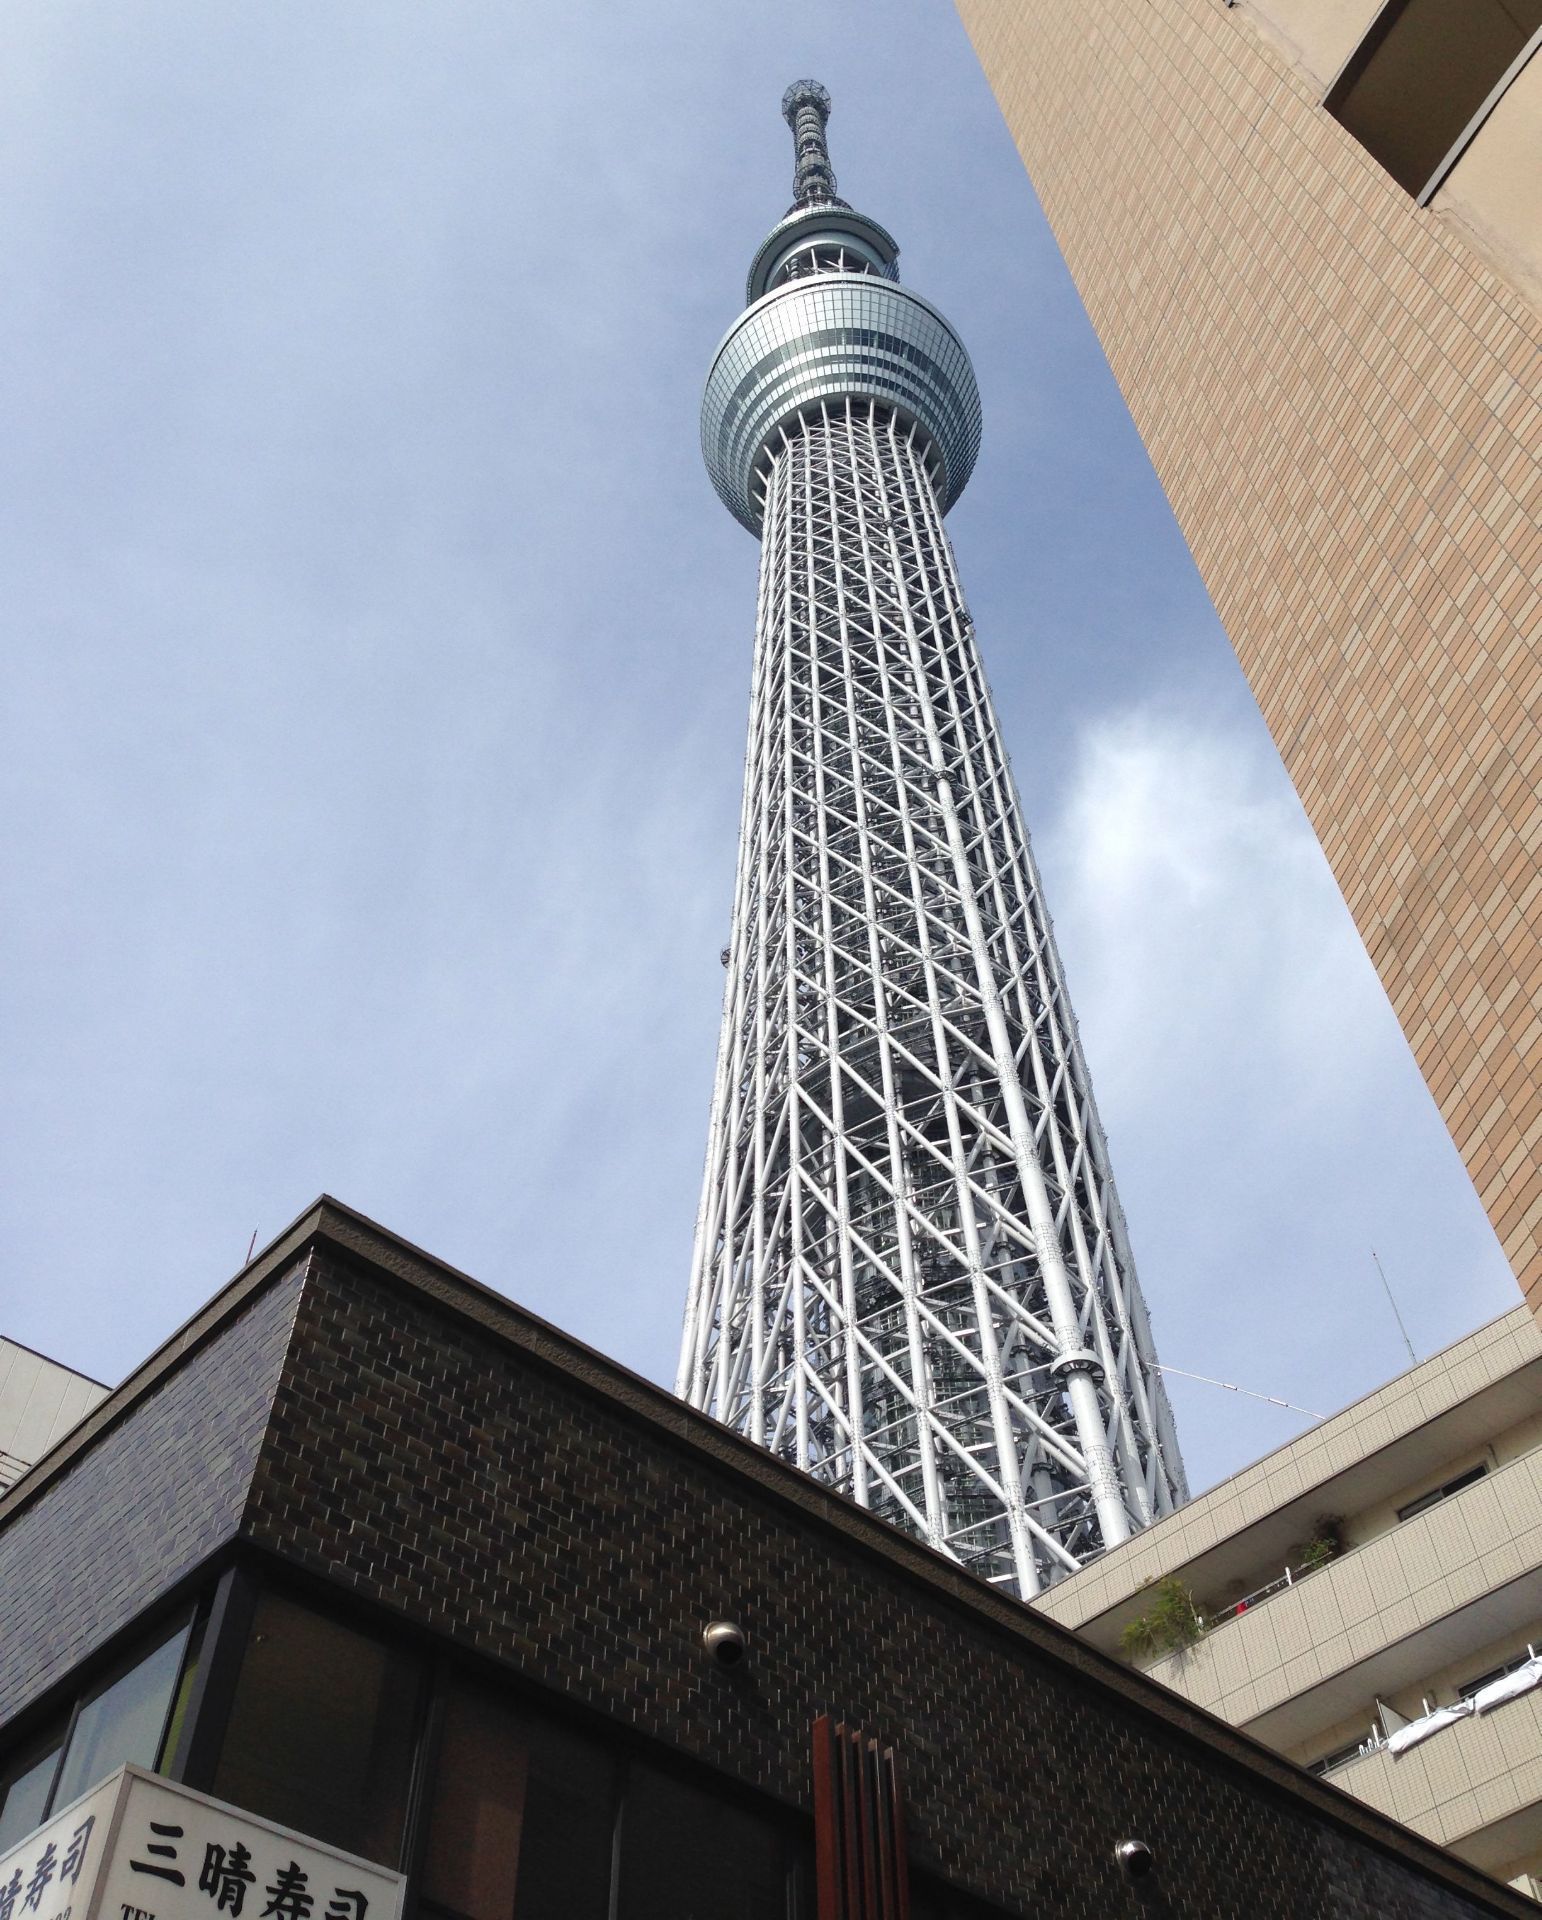 【携程攻略】东京东京塔景点,尽管SkyTree已经竣工多年，也替代不了东京塔在游客心中作为地标建筑…